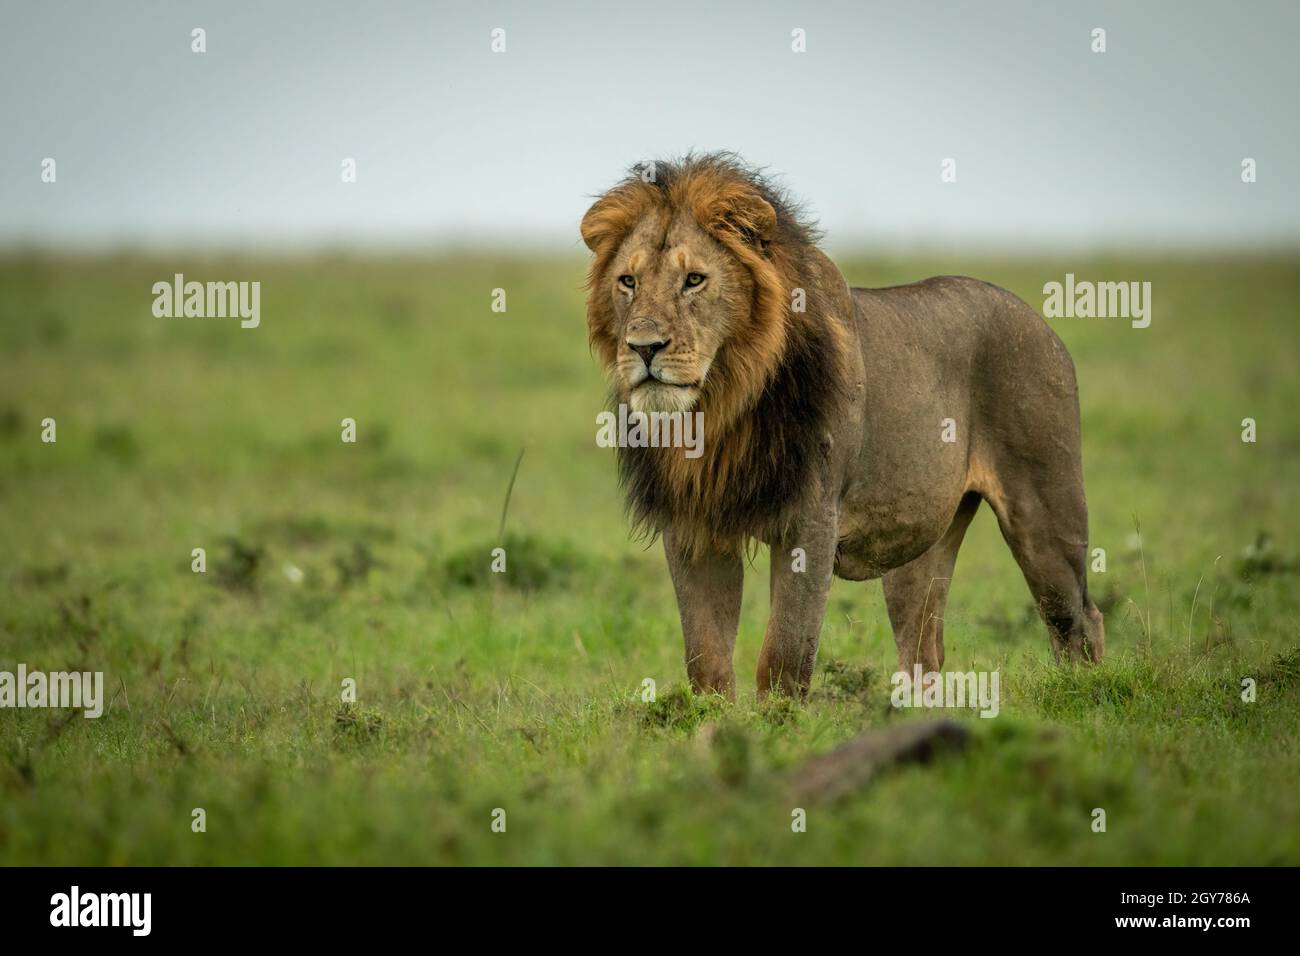 El león macho está mirando fijamente sobre praderas planas Foto de stock